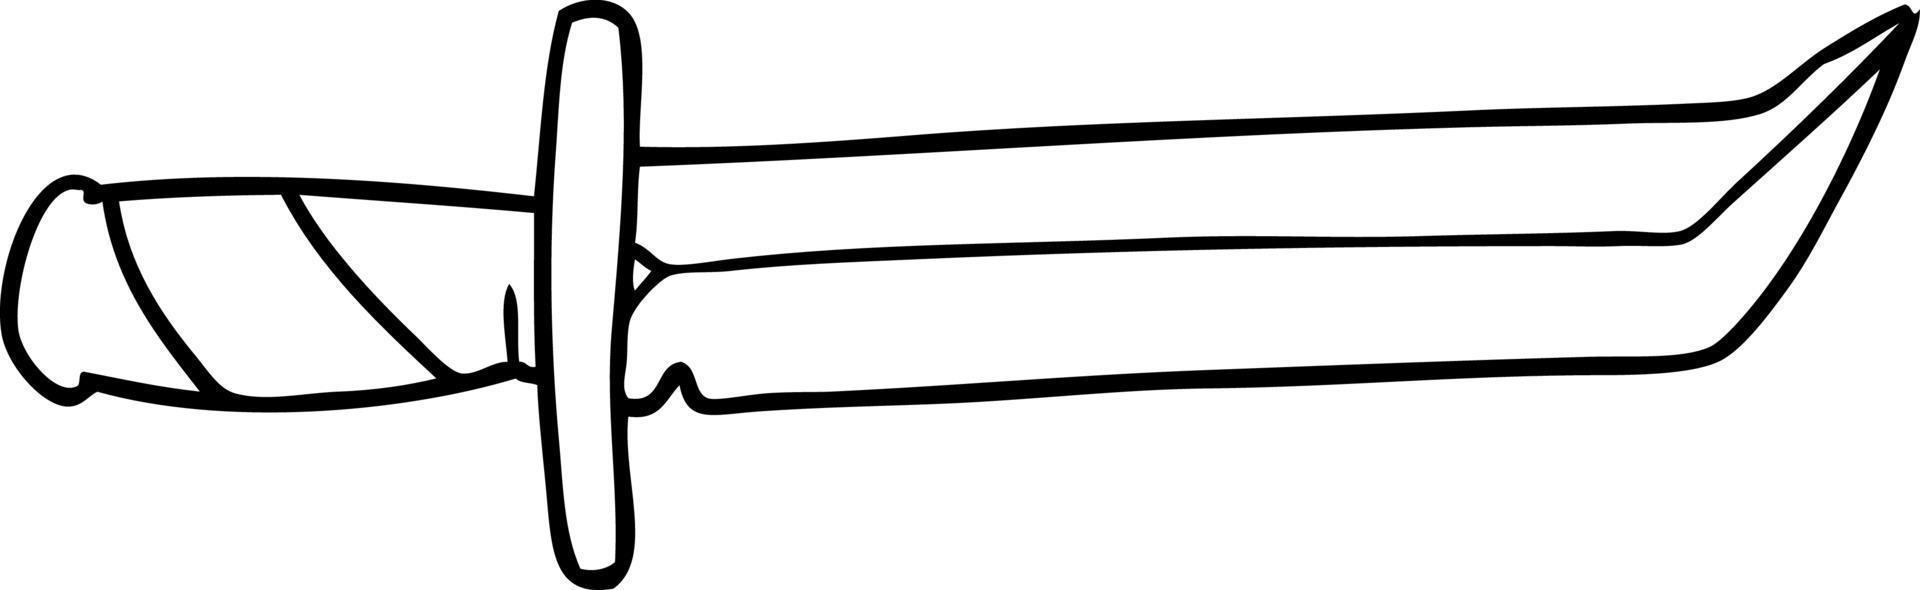 garabato de dibujo lineal de una daga corta vector